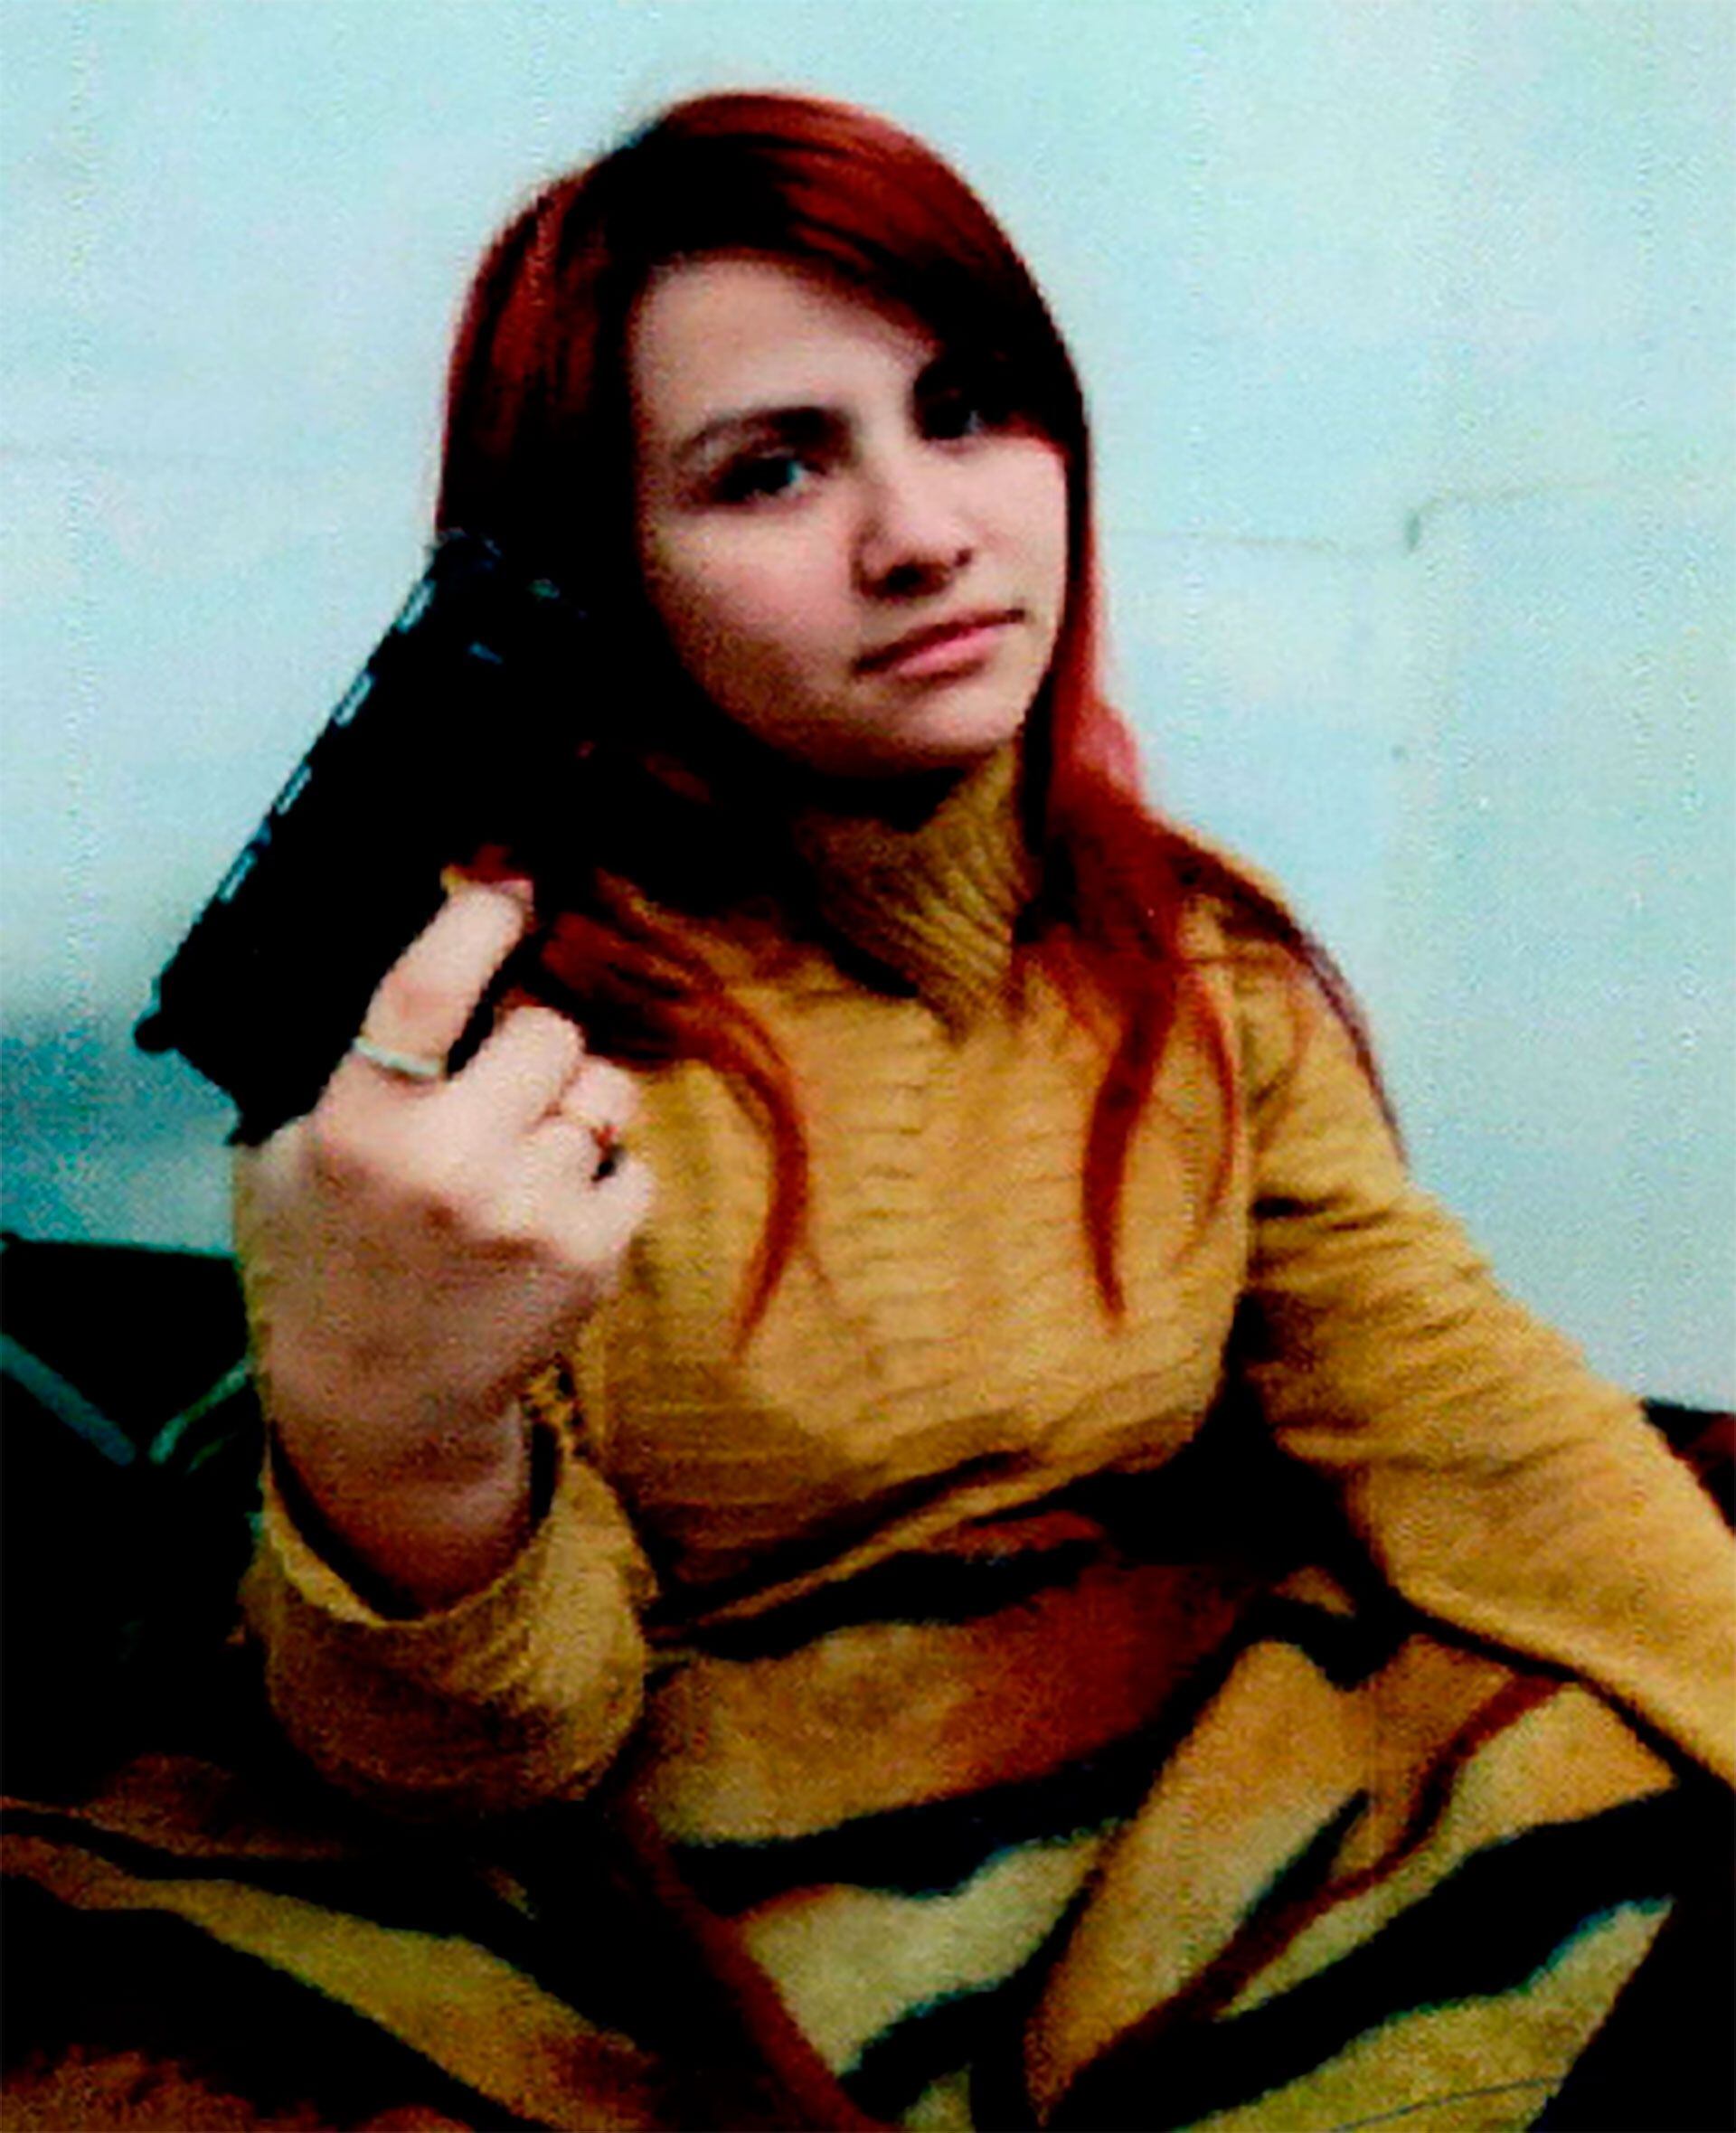 Brenda Uliarte posando con el arma con la que se intentó matar a la vicepresidenta